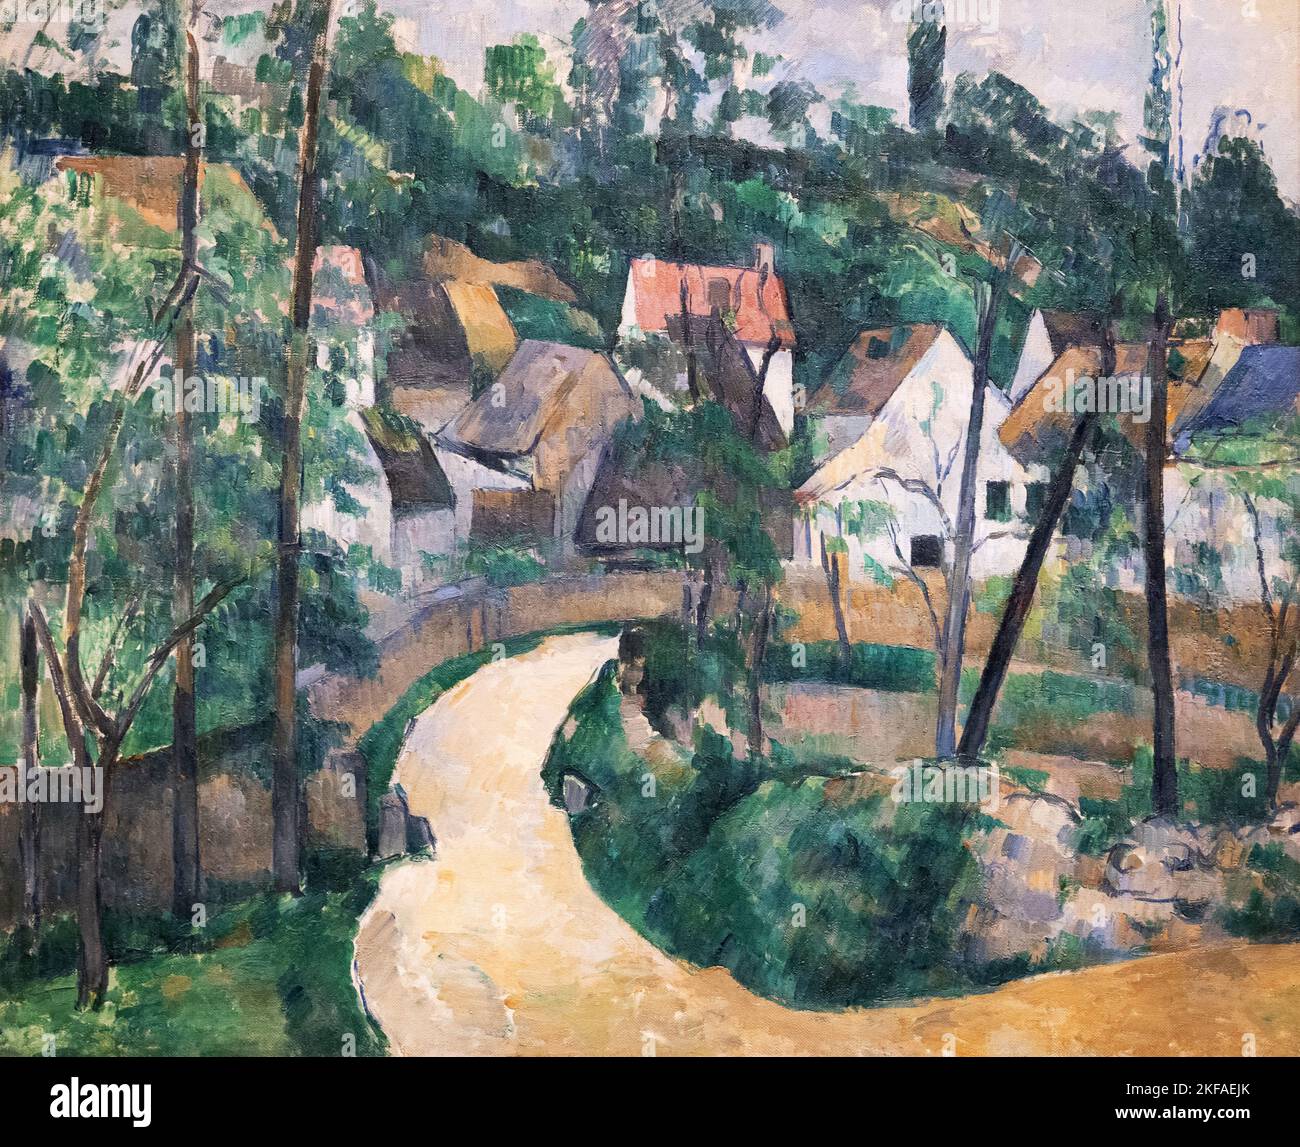 Paul Cézanne peintures,- tourner dans la route, 1881, Post Impressionnisme peinture de paysage, 19th siècle. Banque D'Images